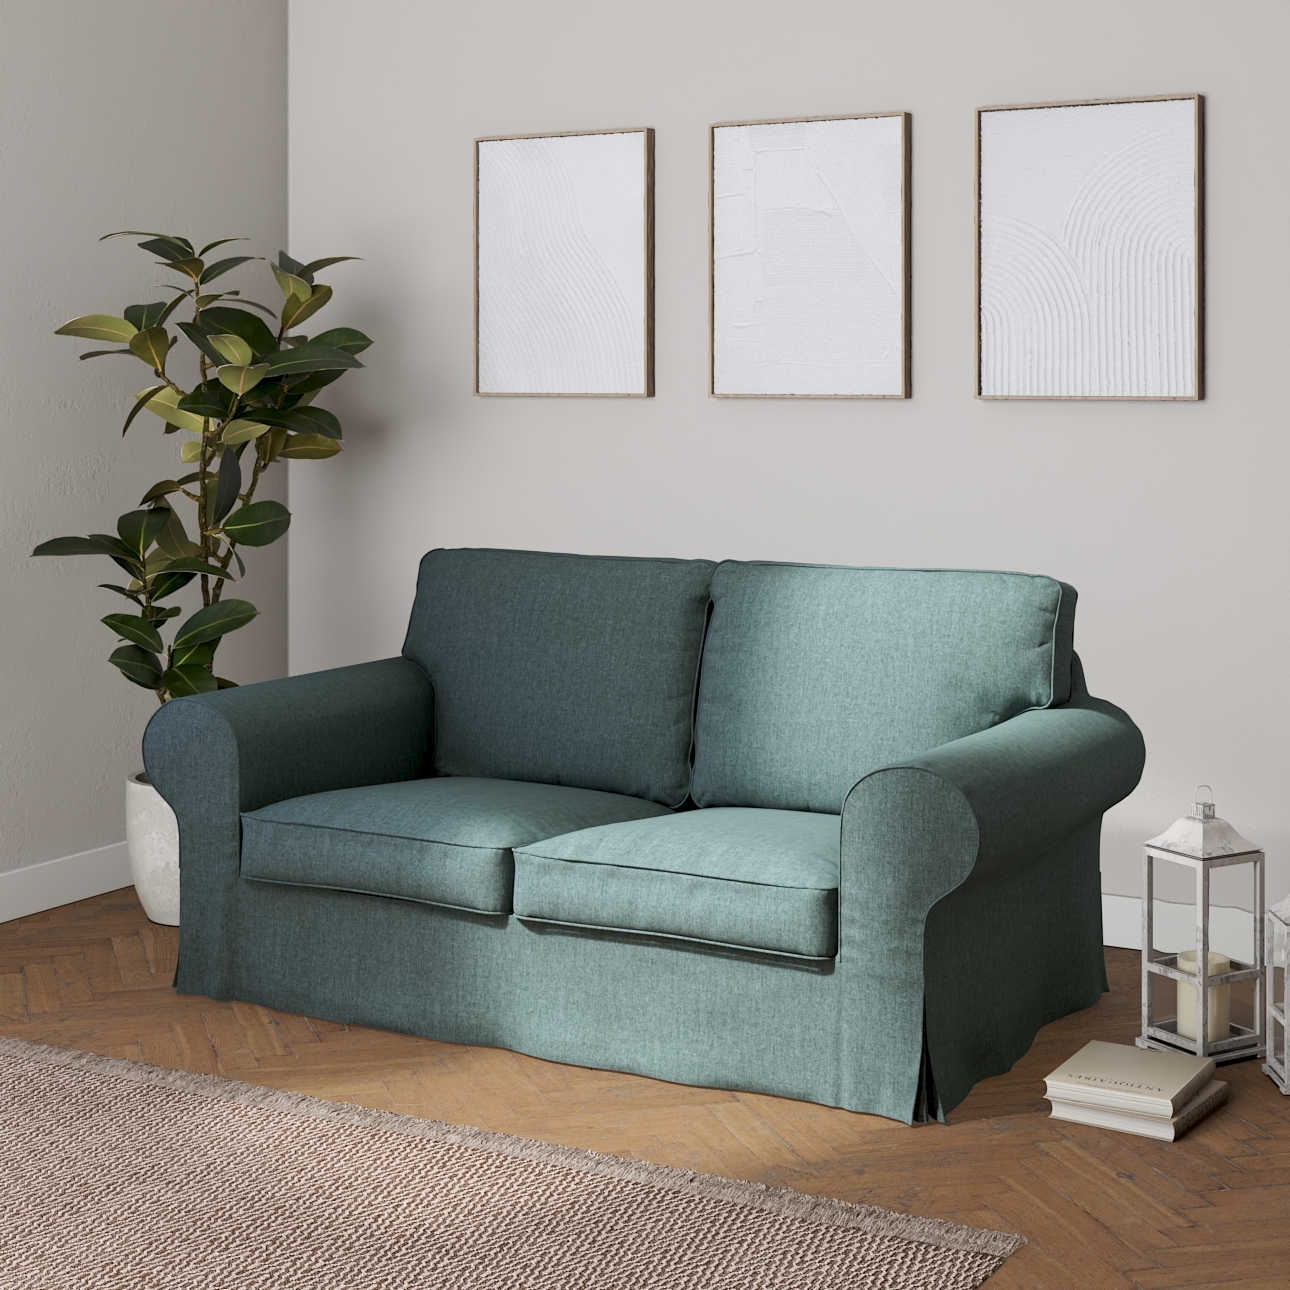 Bezug für Ektorp 2-Sitzer Schlafsofa NEUES Modell, grau- blau, Sofabezug fü günstig online kaufen